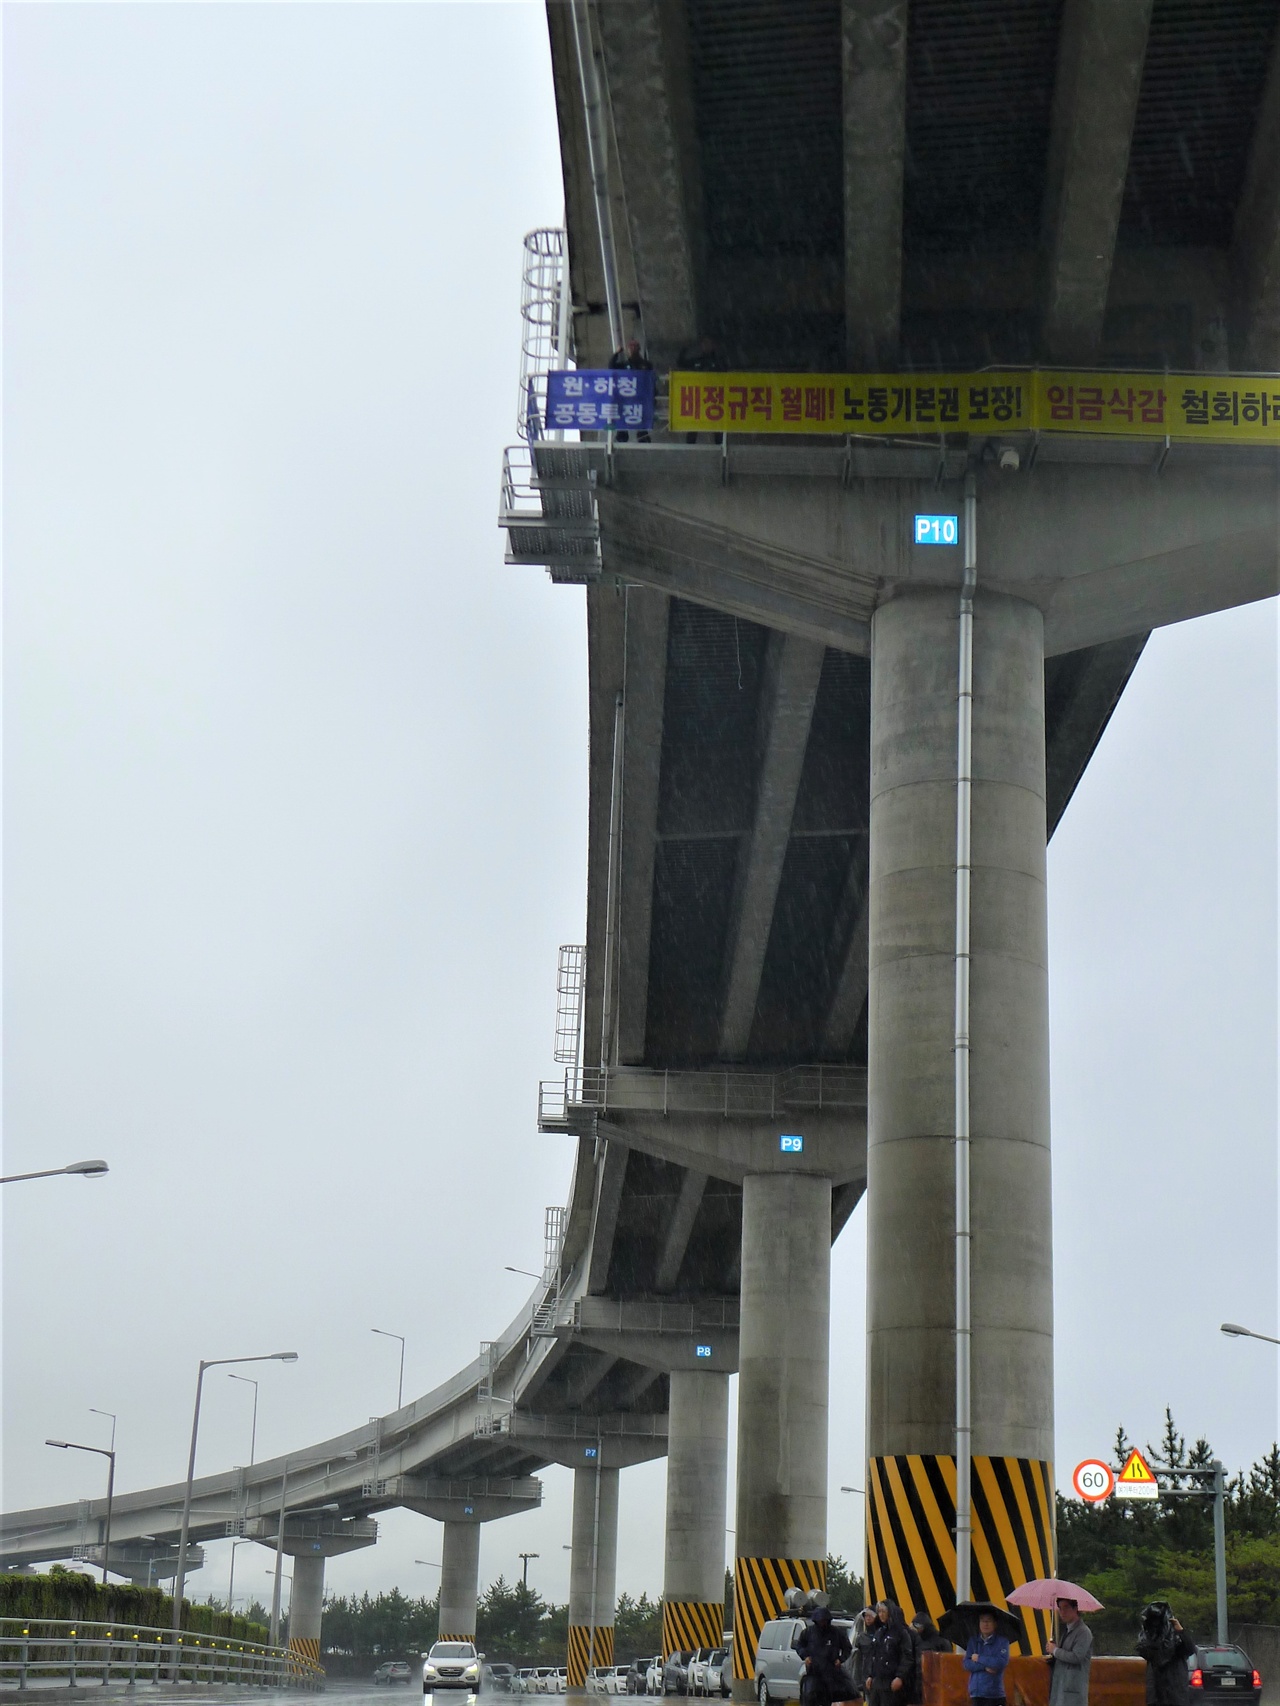 고공농성장이 위치한 울산 북구 성남삼거리 염포터널 고가도로 교각. 높이가 약 20m에 이른다.
